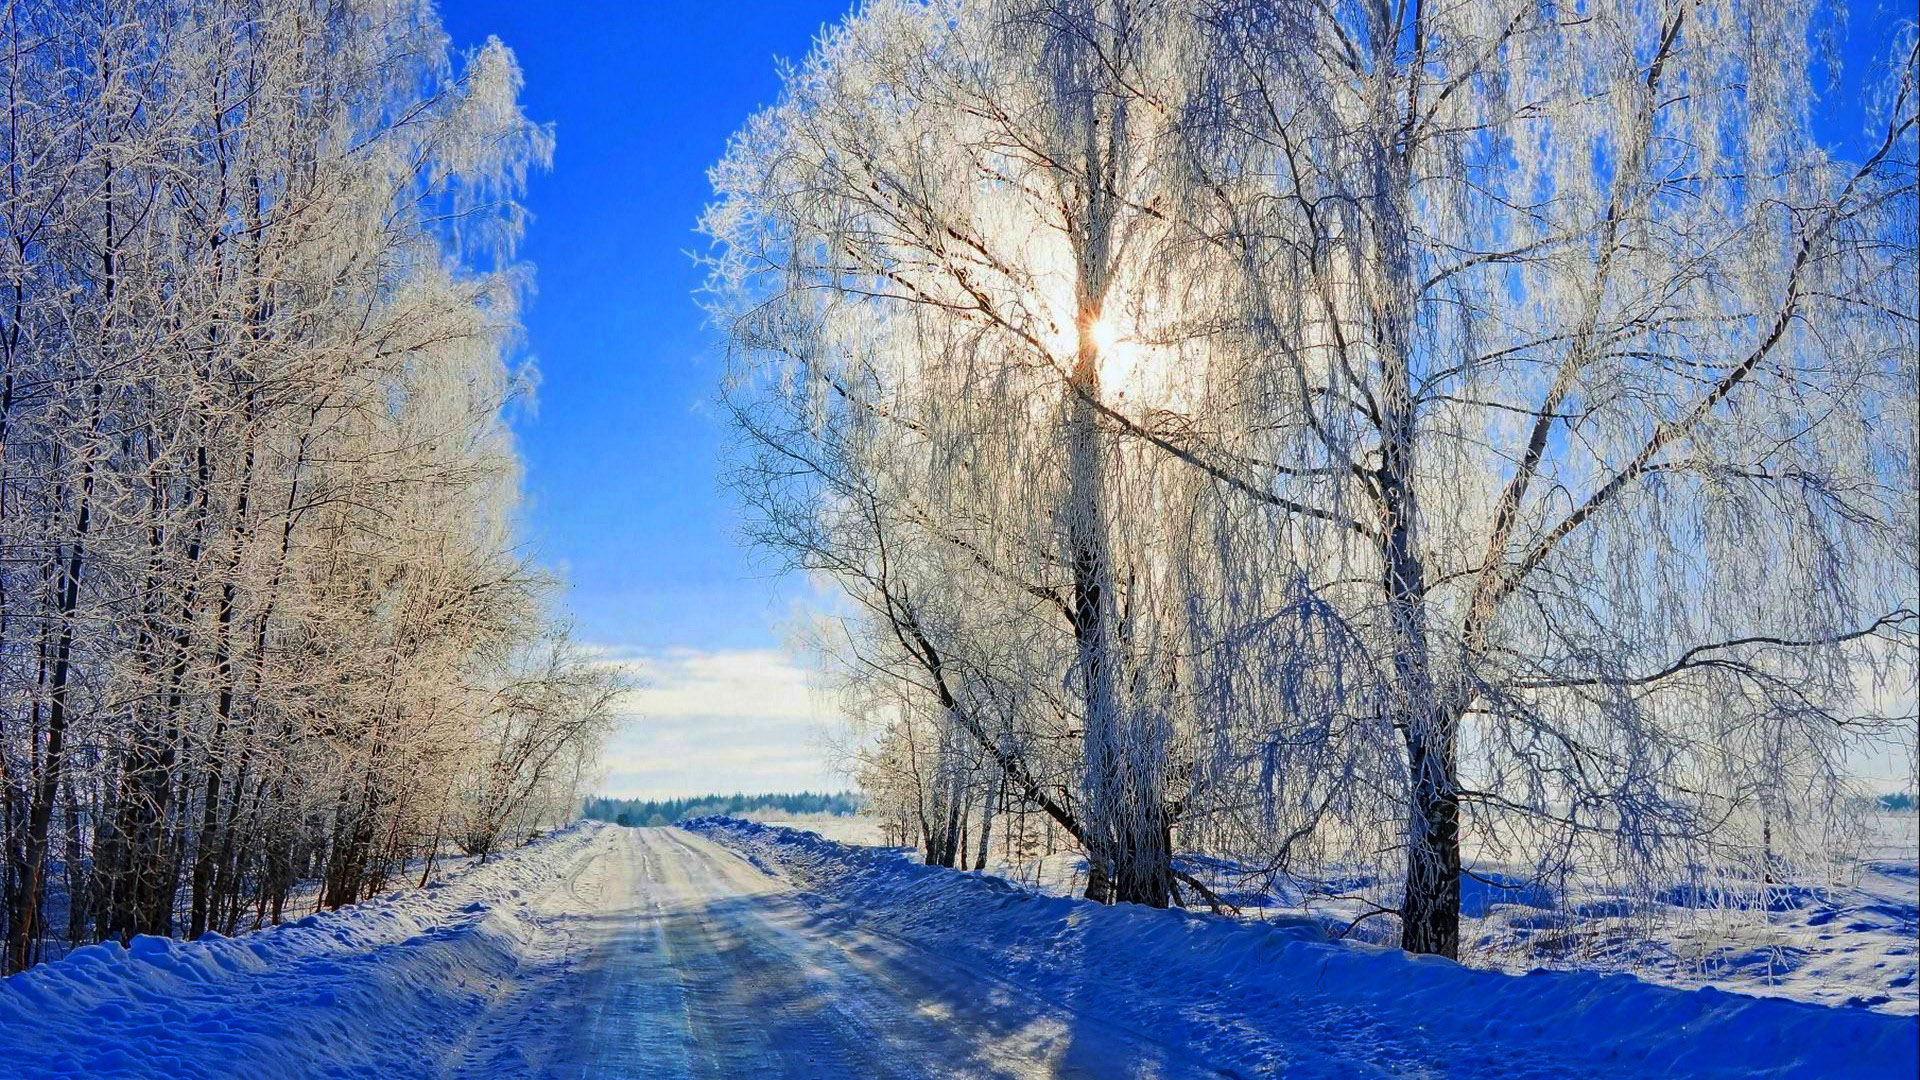 冬天 雪 路 树木 太阳 蓝色雪景 自然风景壁纸 风景壁纸 壁纸下载 彼岸桌面